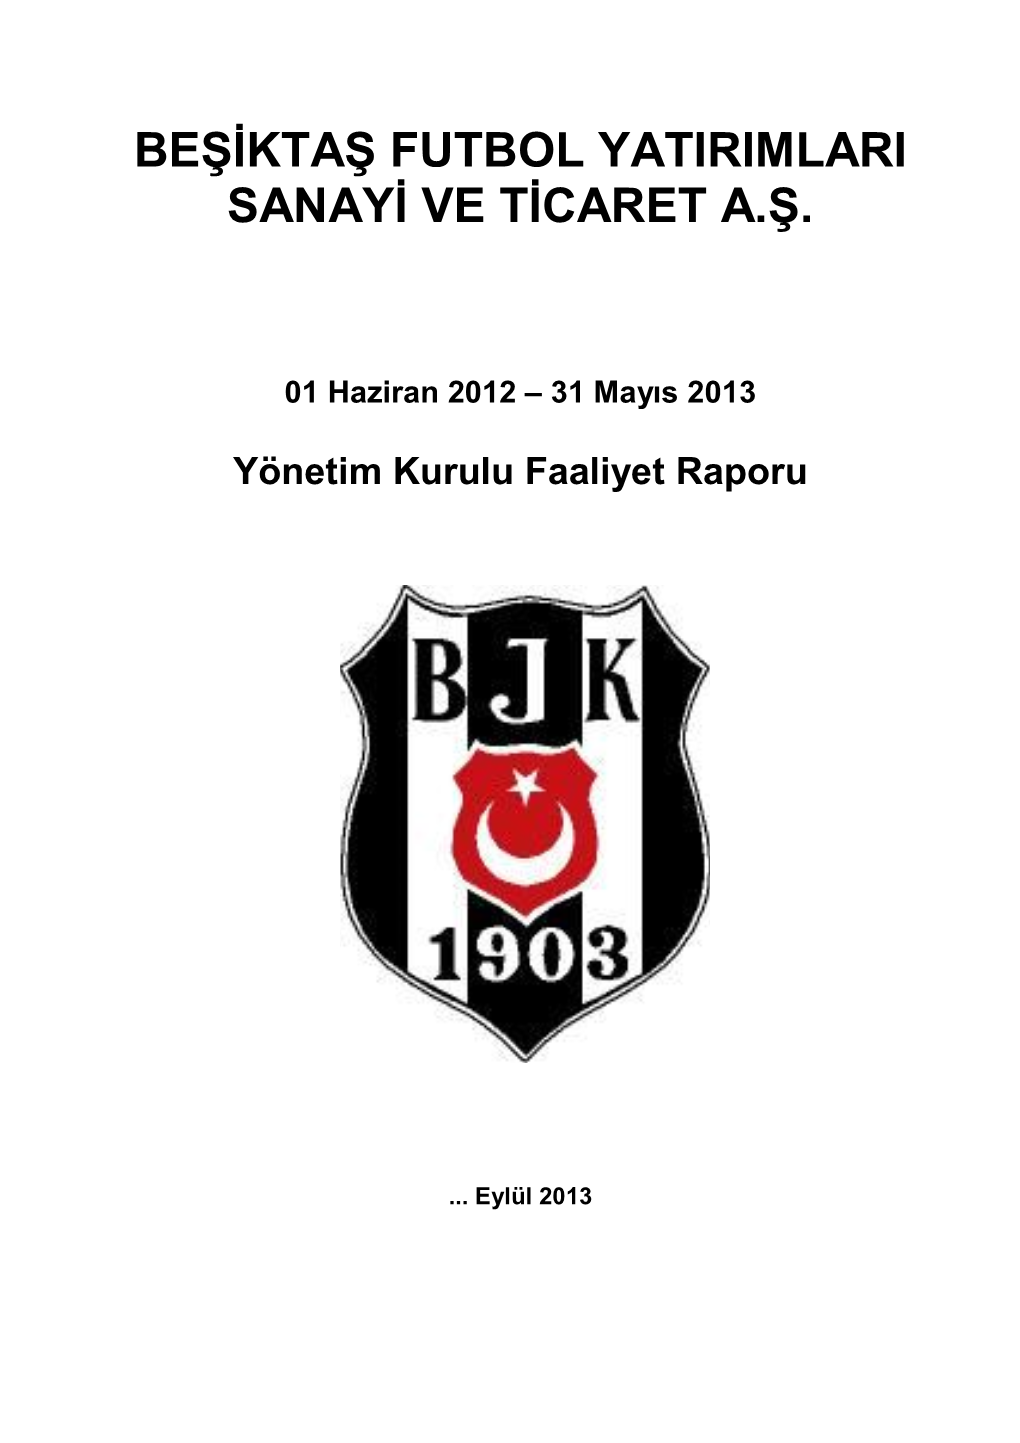 Beşiktaş Futbol Yatirimlari Sanayi Ve Ticaret A.Ş. Seri:Xi No:29 Sayili Tebliğe Istinaden Hazirlanmiş Yönetim Kurulu Faaliyet Raporu